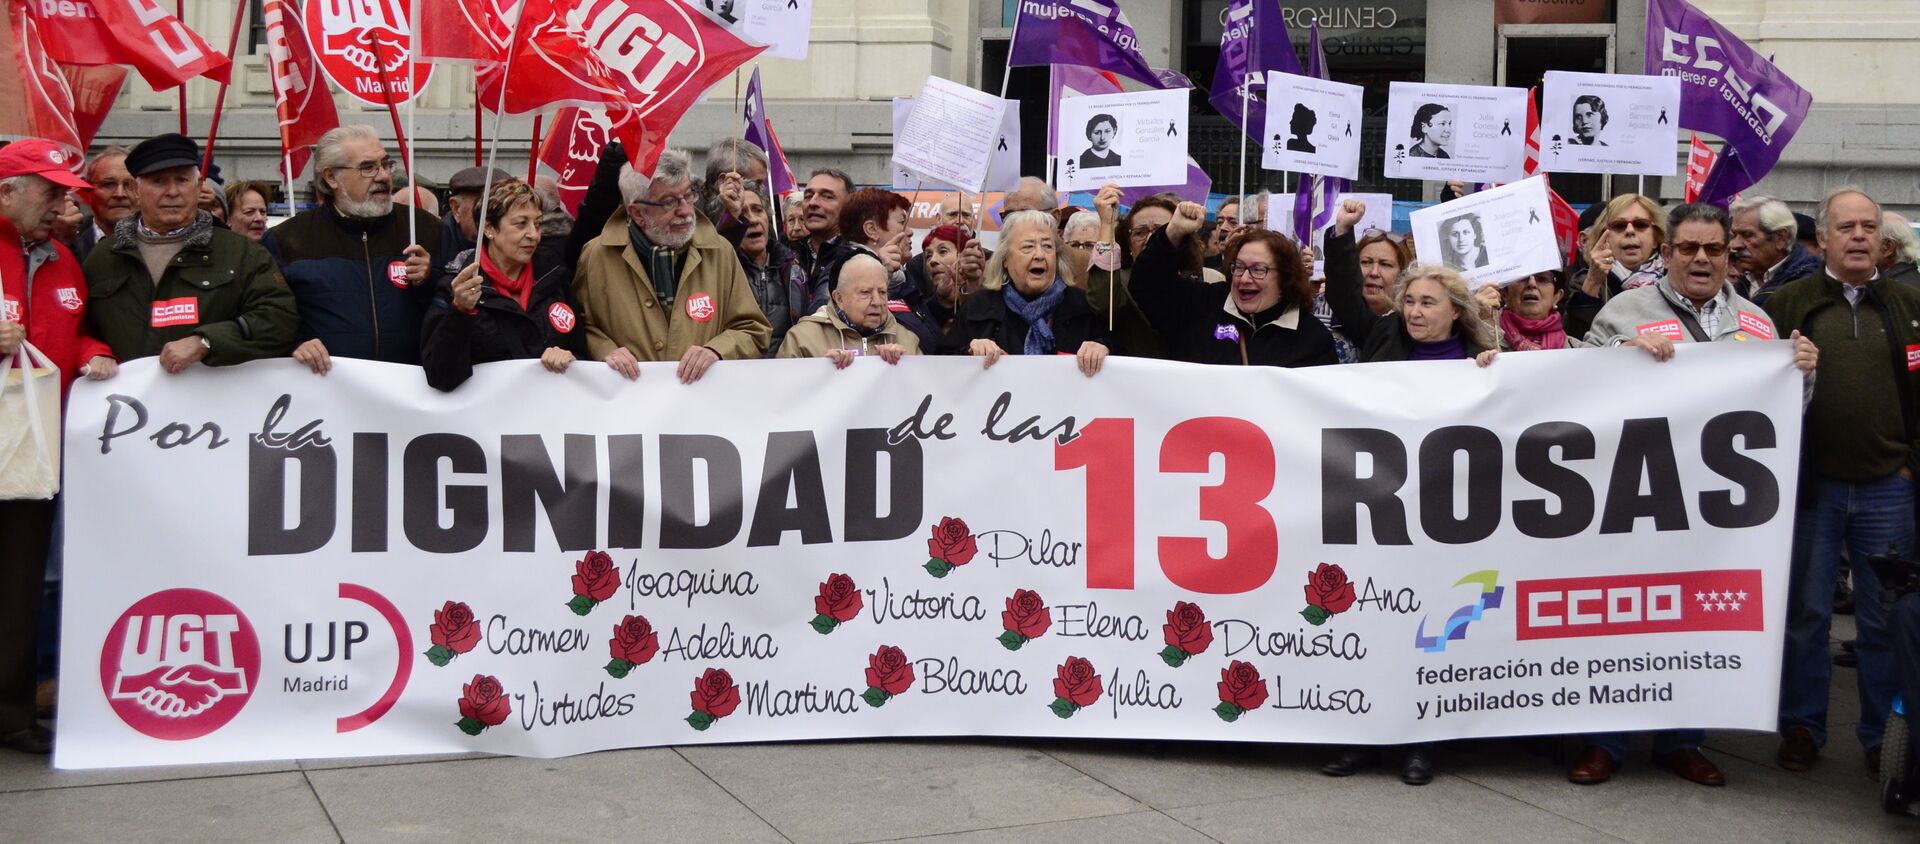 Descendientes de las víctimas del franquismo manifiestan por restablecer la justicia histórica en el caso de 13 Rosas - Sputnik Mundo, 1920, 14.12.2019